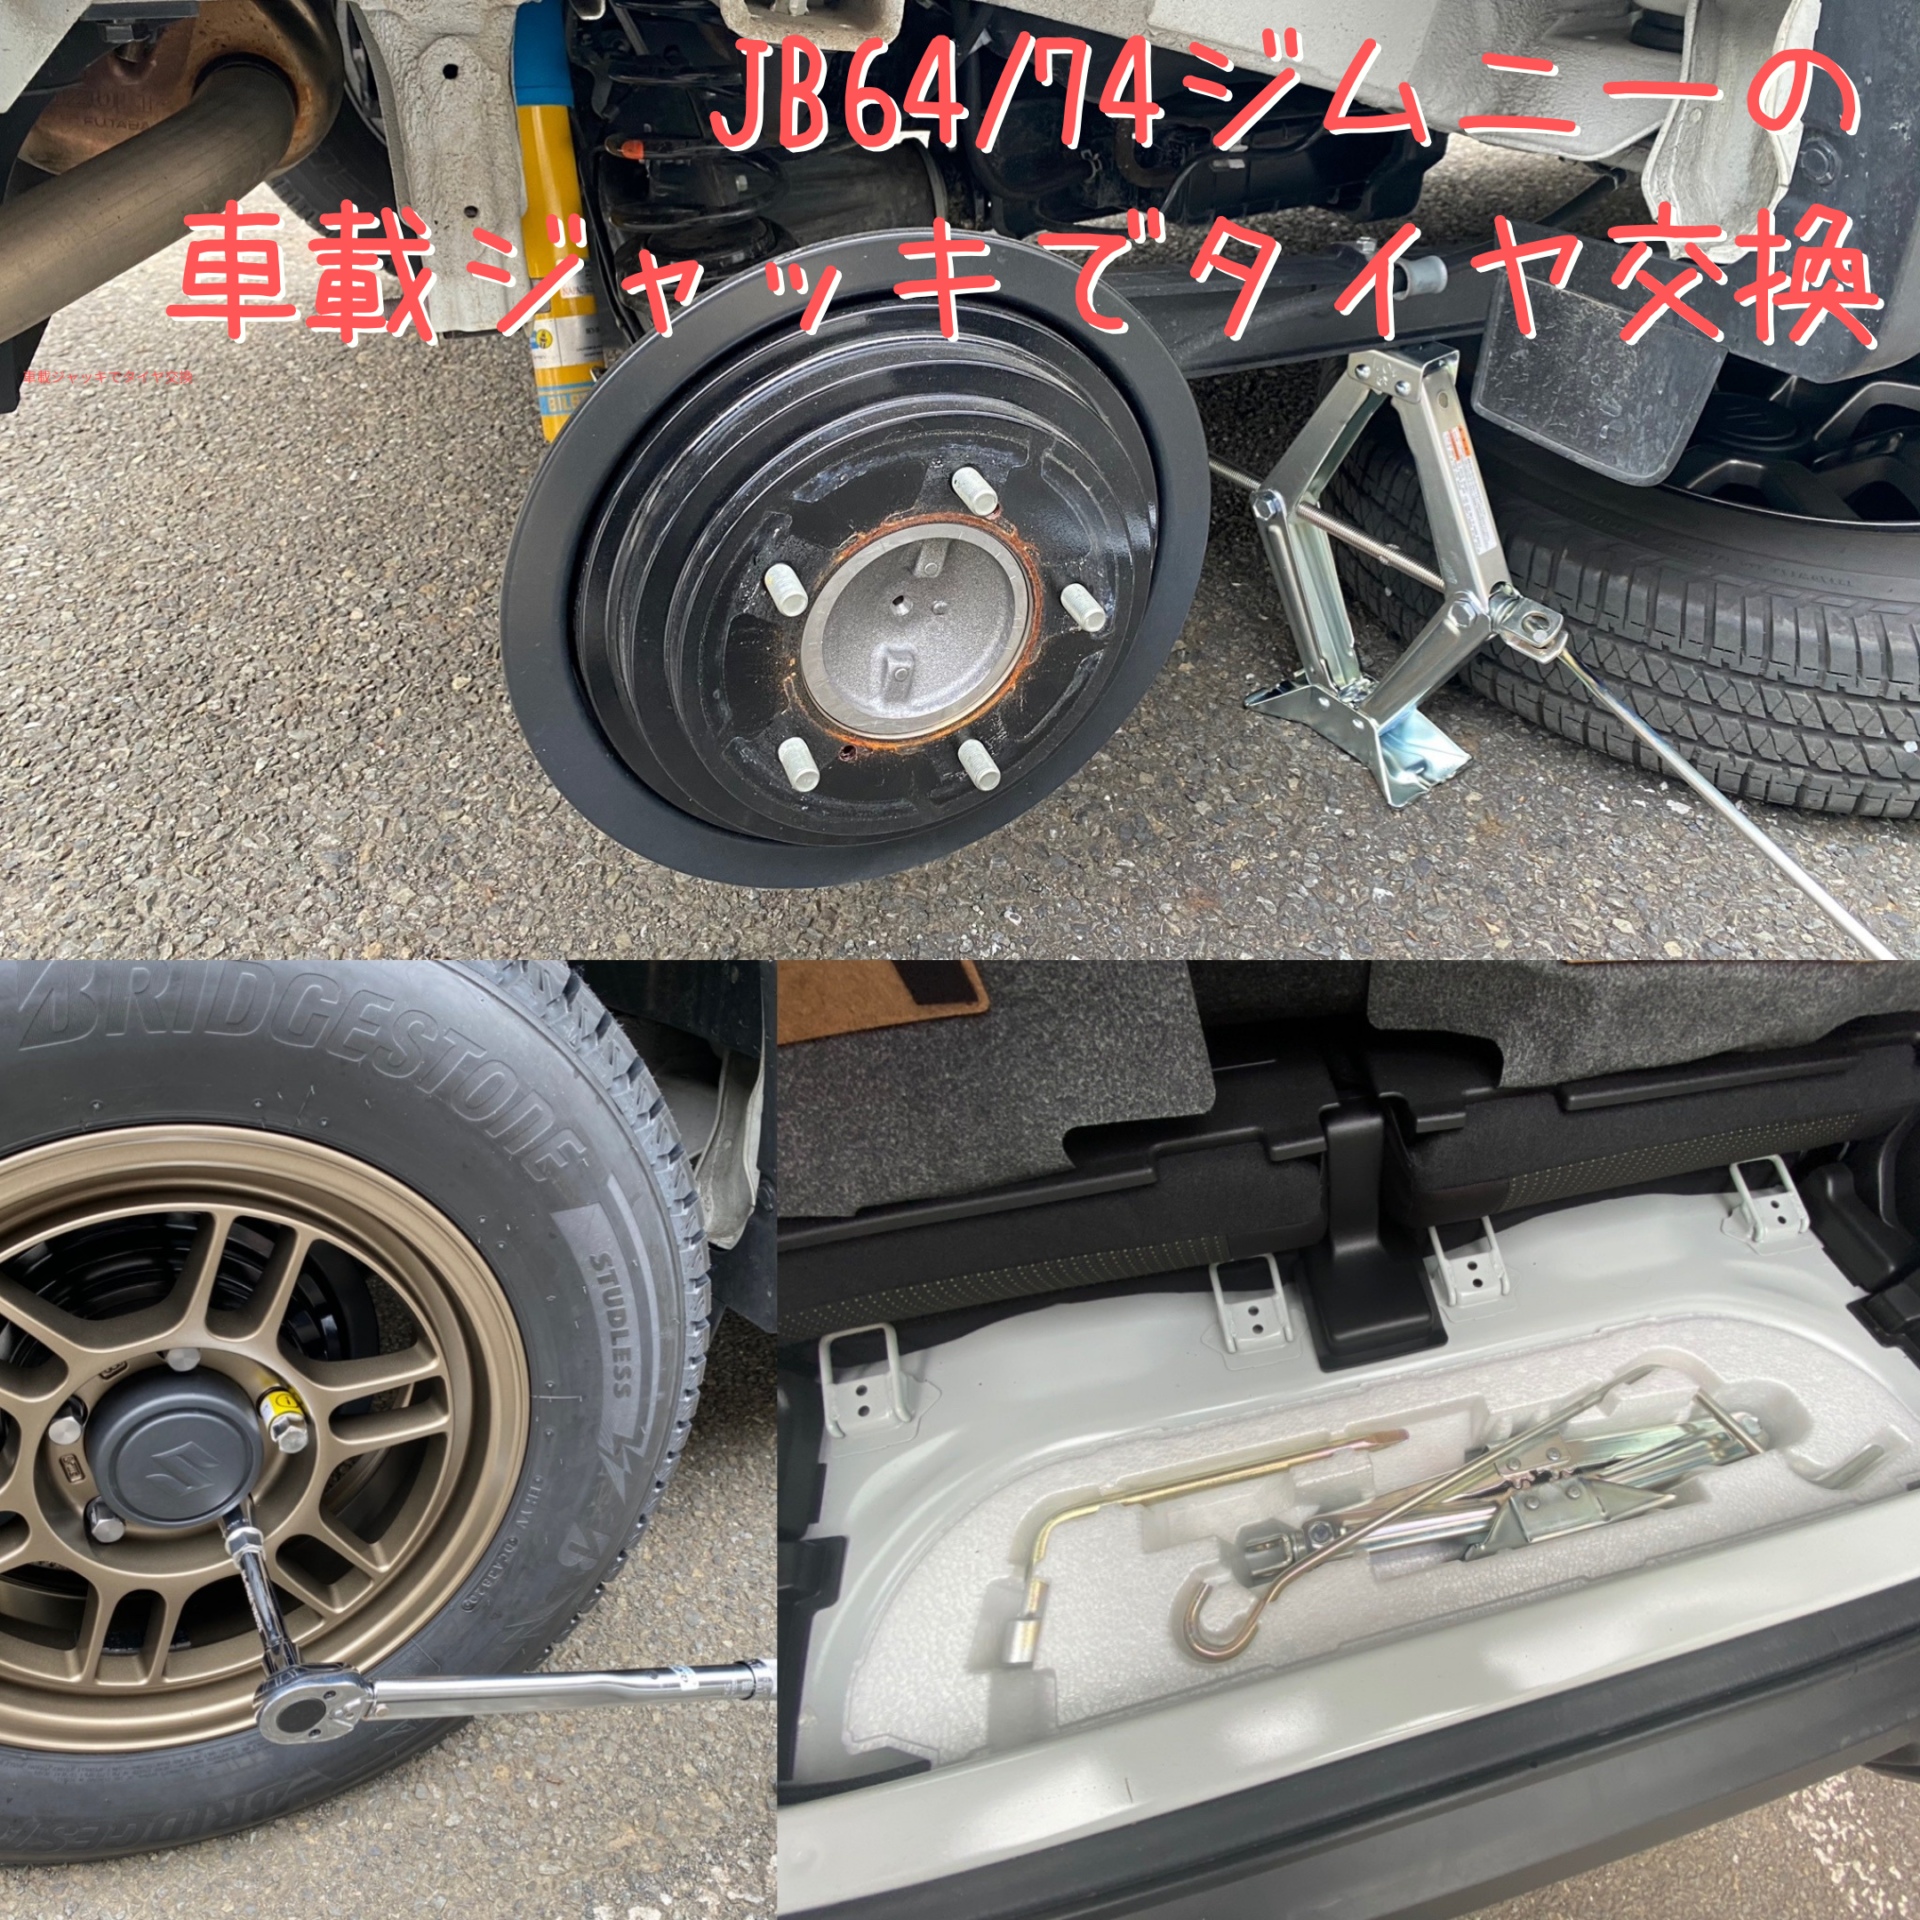 JB64/74ジムニー 車載ジャッキでタイヤ交換 〜スタッドレスタイヤ交換